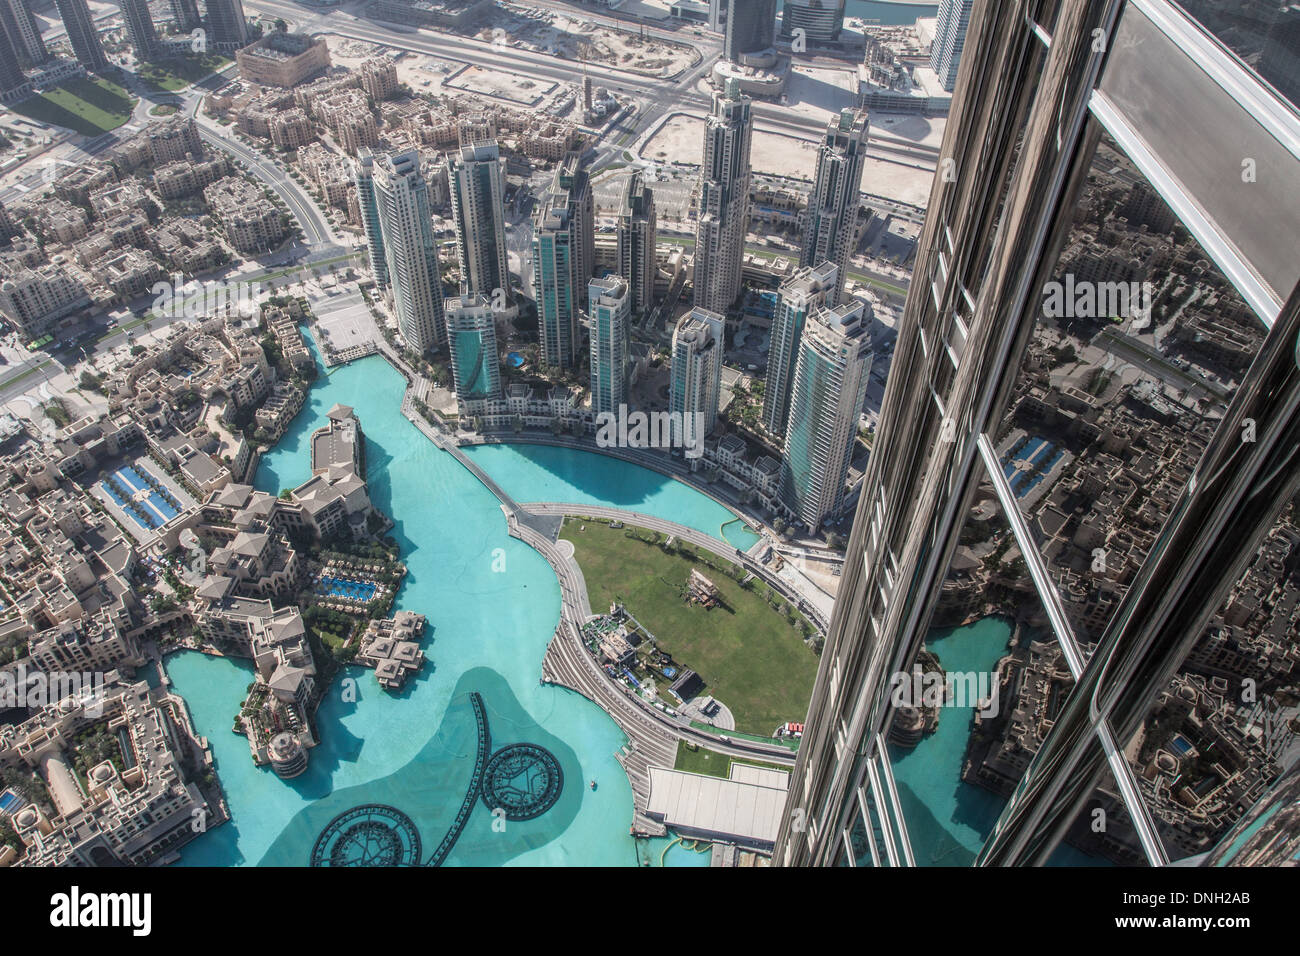 Vista Panoramica di Downtown Dubai dall'Osservatorio di Burj Khalifa Tower, una volta chiamato il Burj Dubai, vista dalla torre più alta del mondo (828 metri), Dubai EMIRATI ARABI UNITI, MEDIO ORIENTE Foto Stock